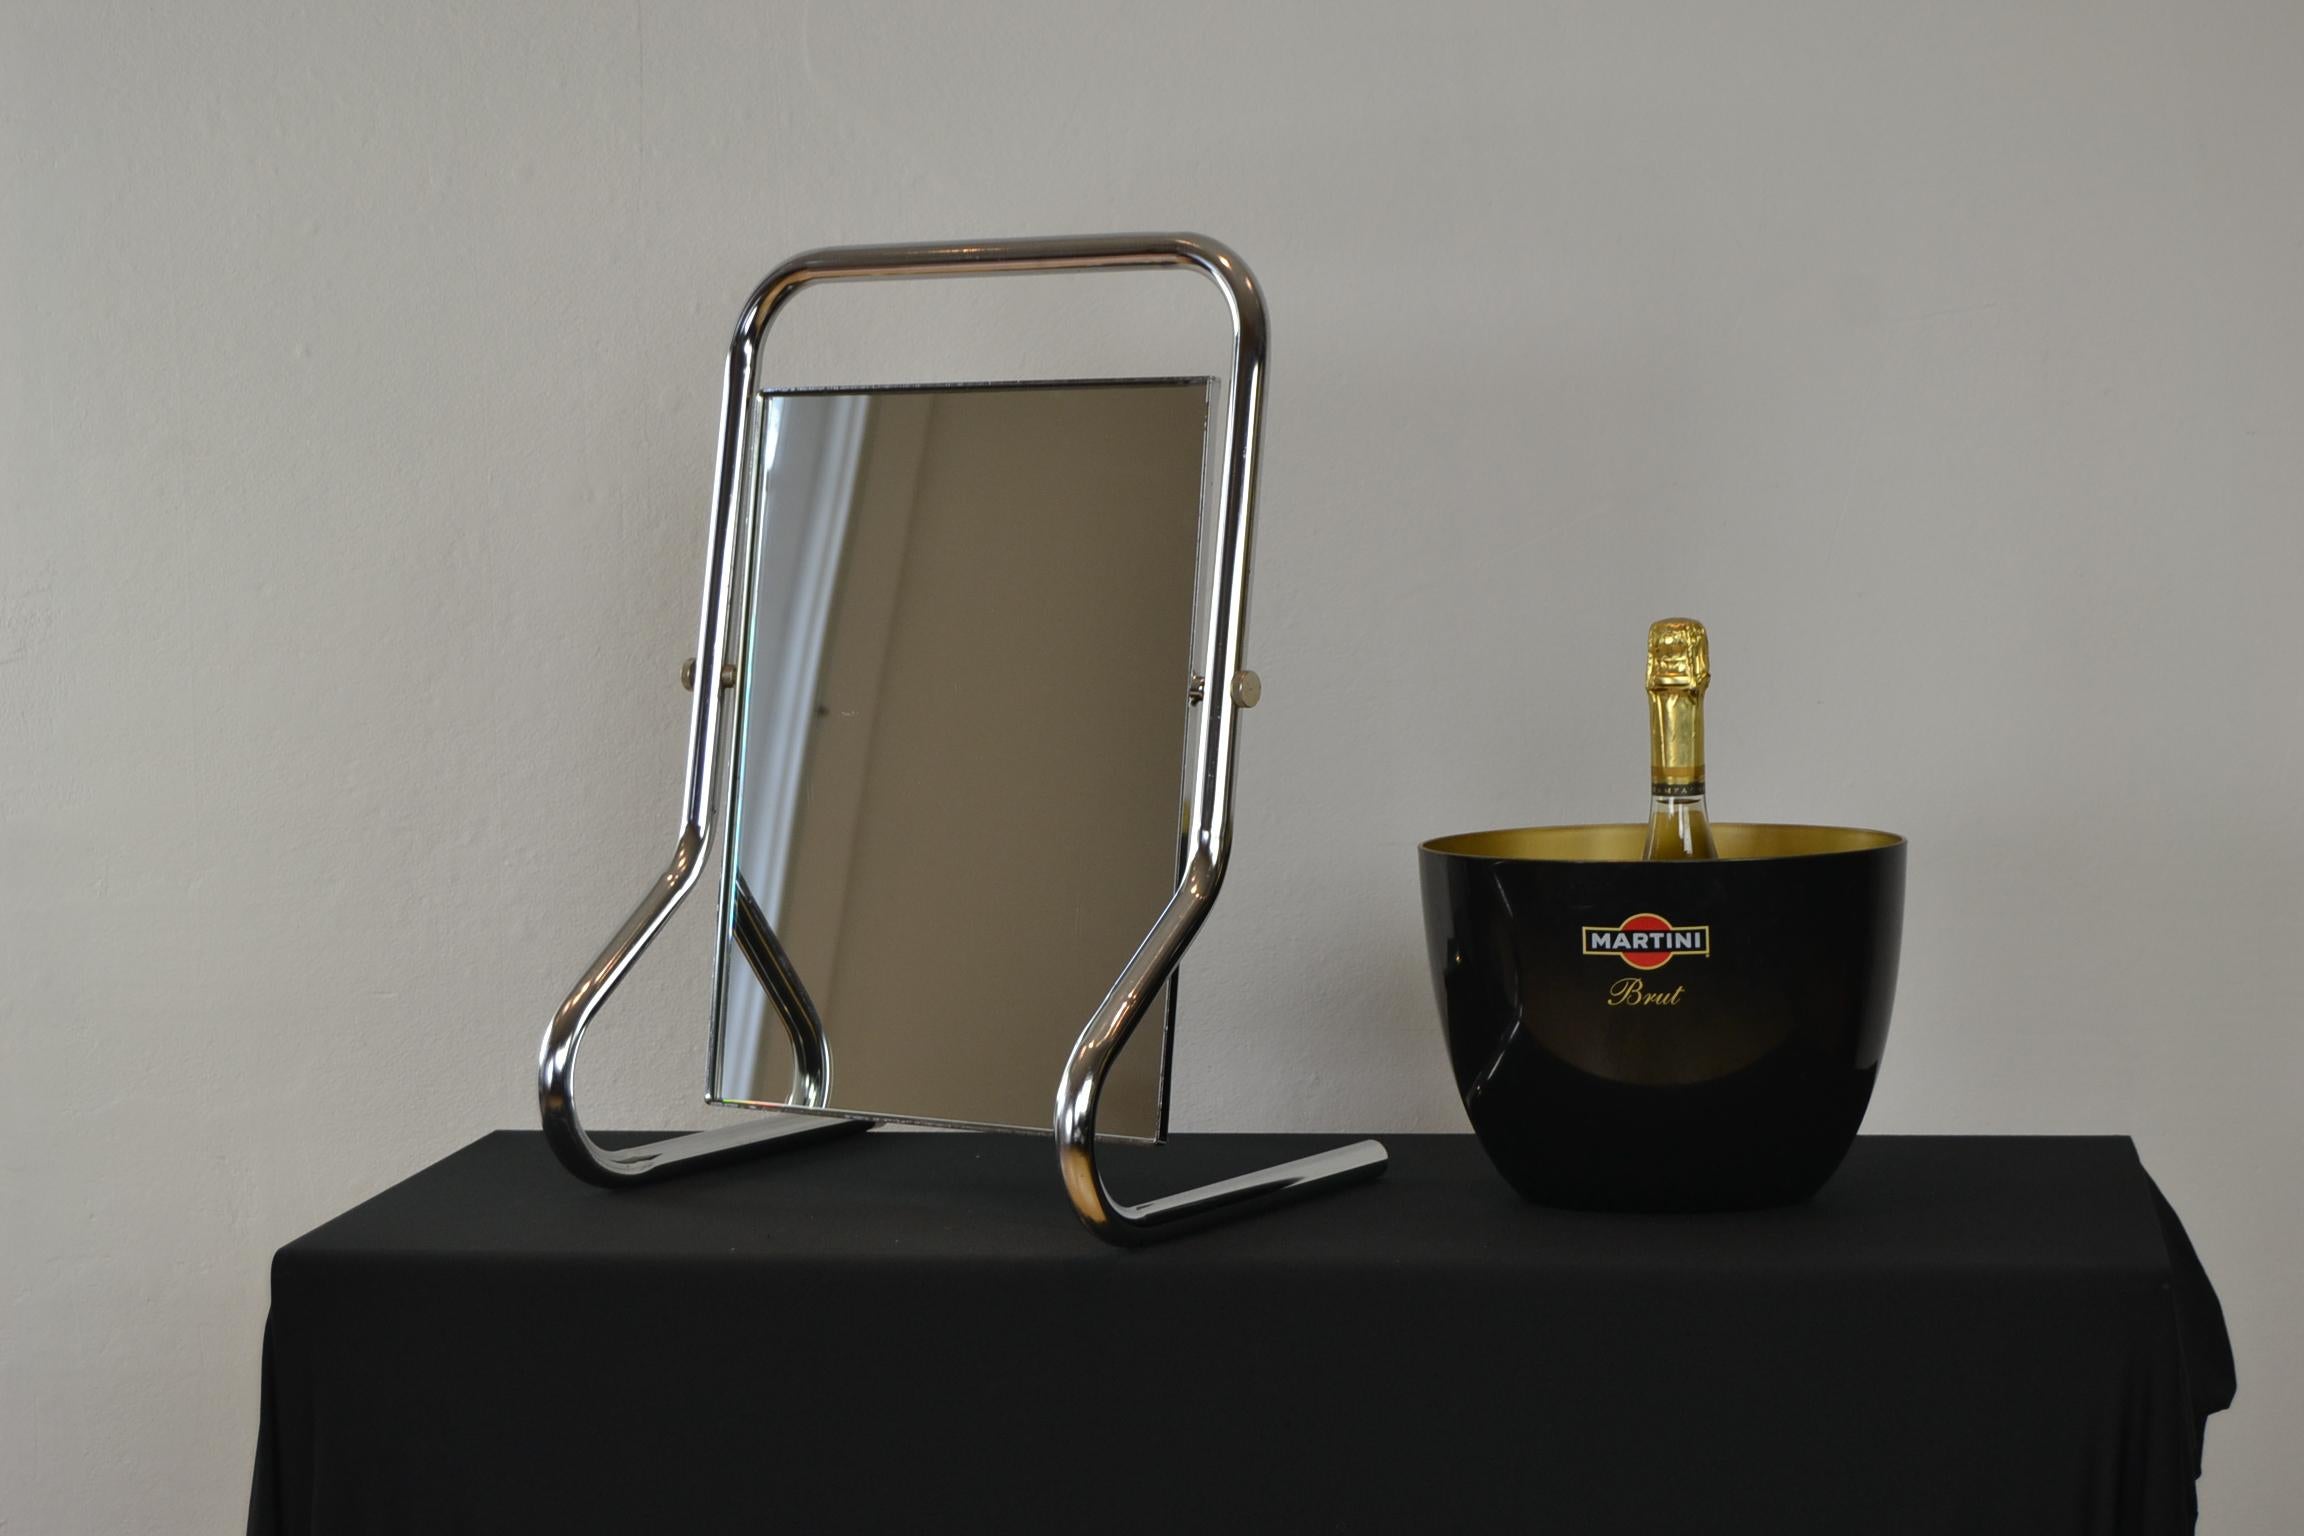 Miroir de table vintage chromé dans le style Bauhaus. 
A  miroir de table avec cadre en tube de métal chromé arrondi. 
La glace rectangulaire de ce miroir de courtoisie peut être placée dans la position que vous souhaitez grâce aux deux boulons